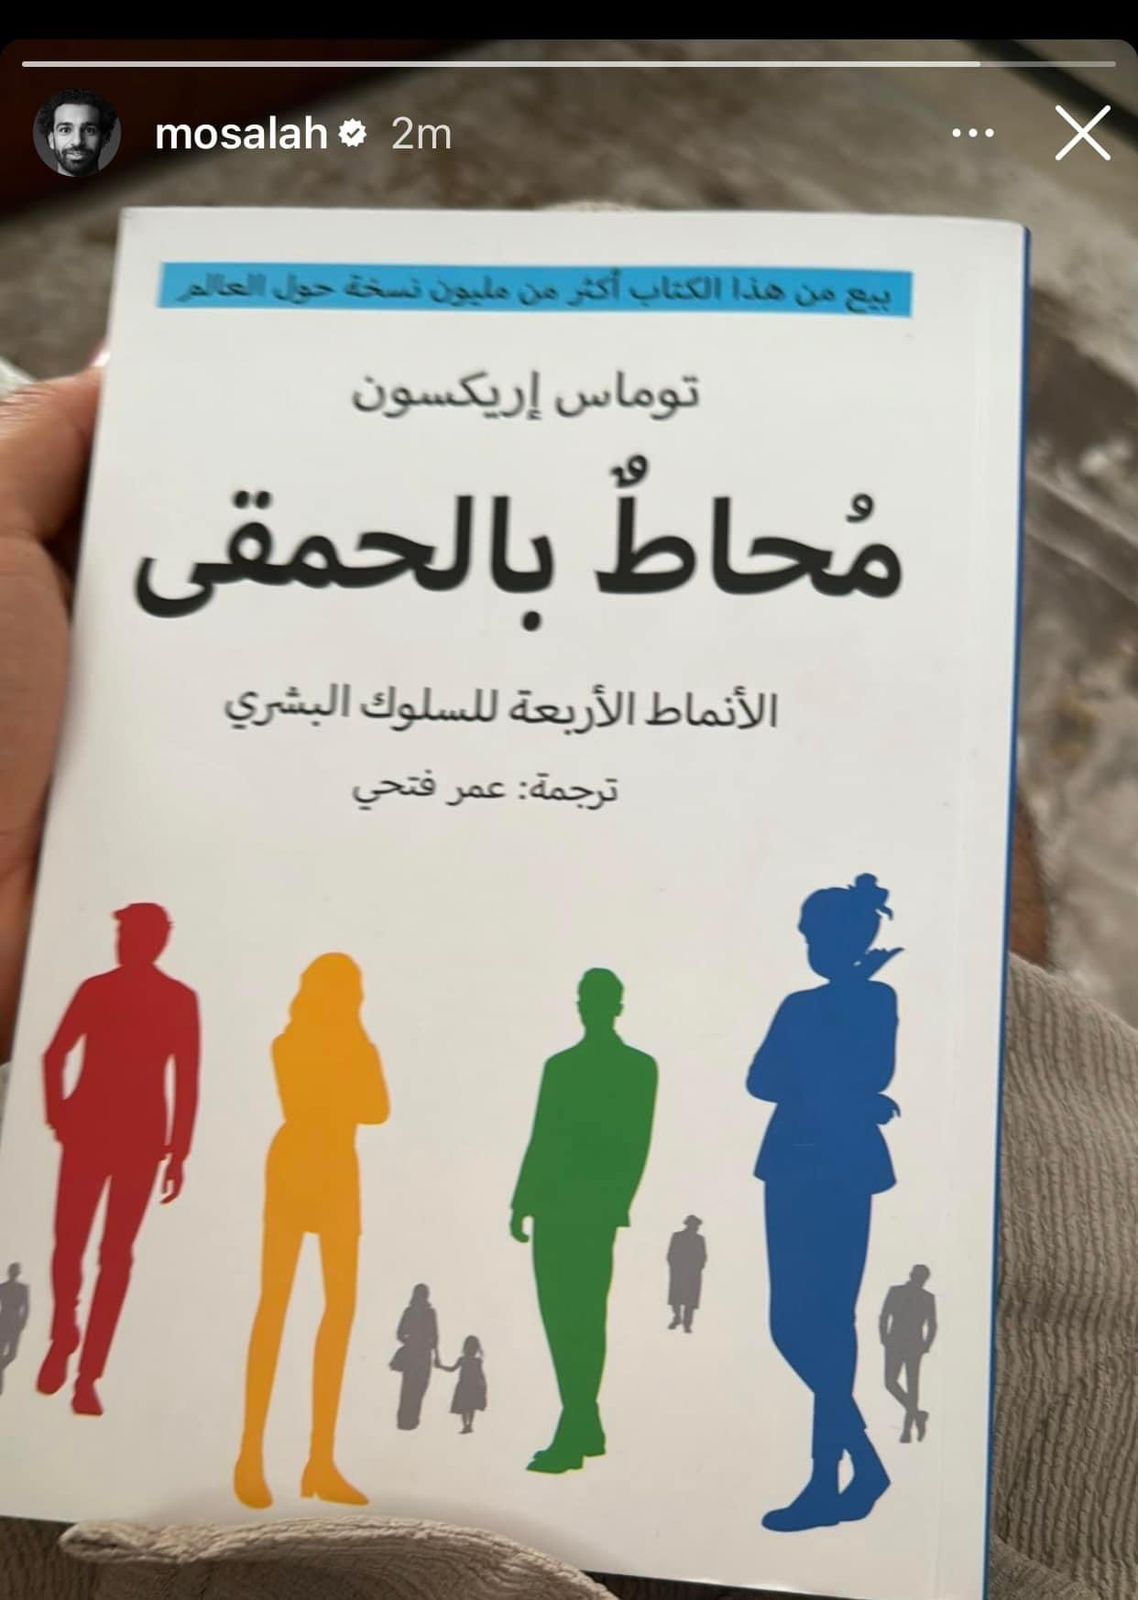 محاط بالحمقى كتب في ستوري محمد صلاح